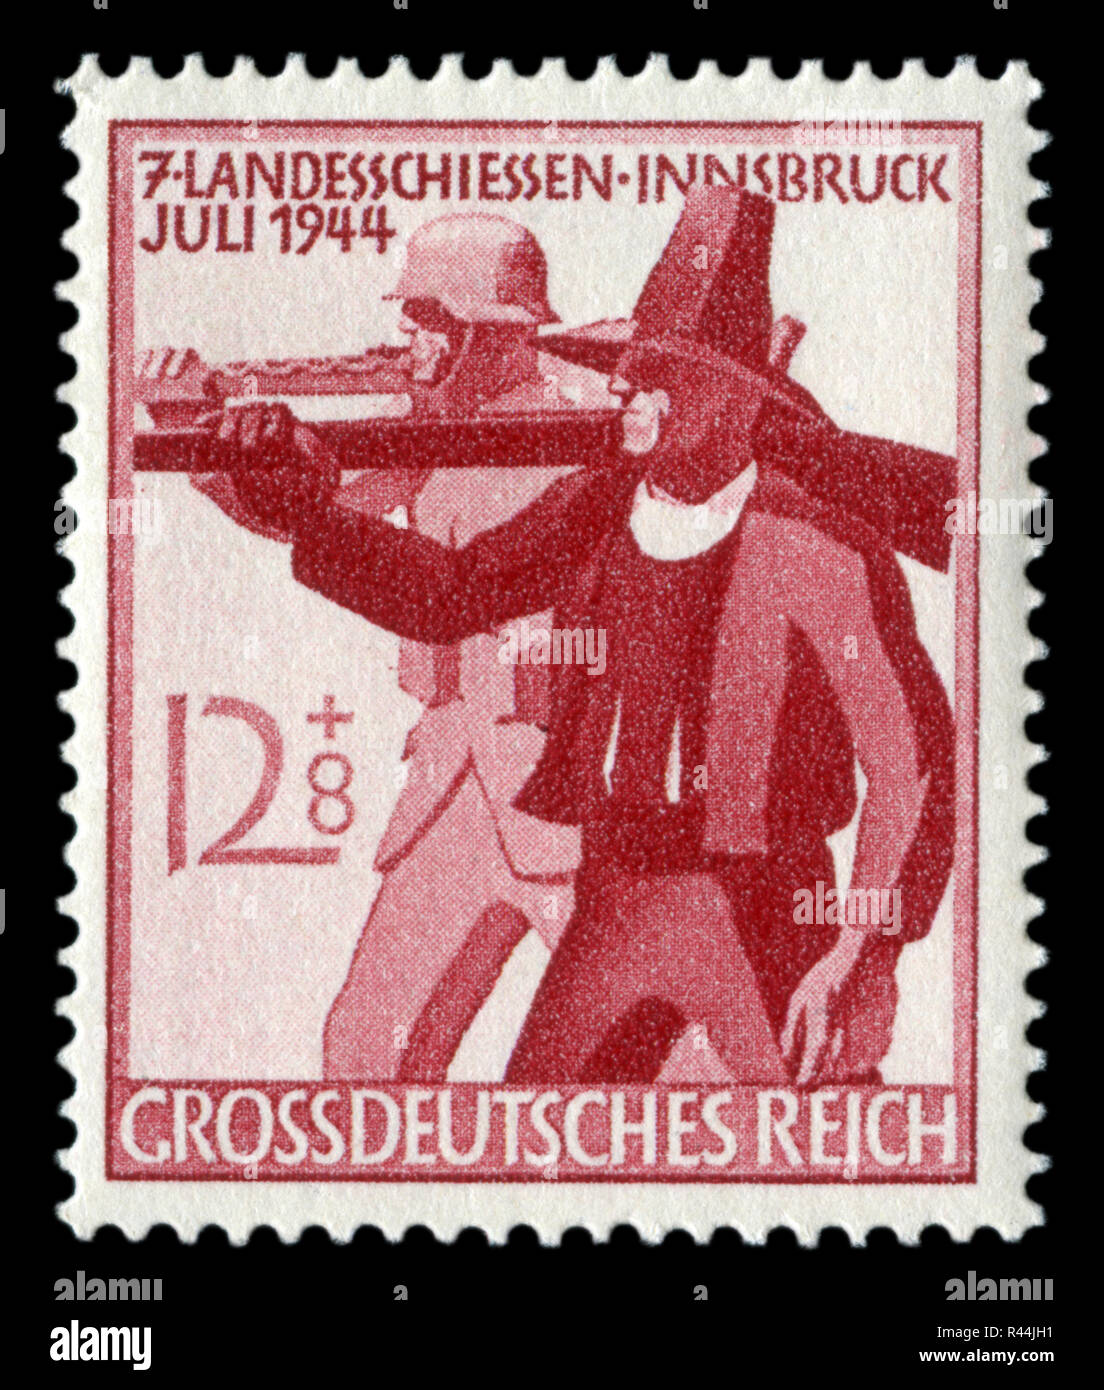 Deutsche historische Stempel: 7.Sitzung der Tiroler Schützen in Innsbruck. Tiroler Rifleman mit Arabella und Soldaten mit einem Maschinengewehr. 1944 Stockfoto